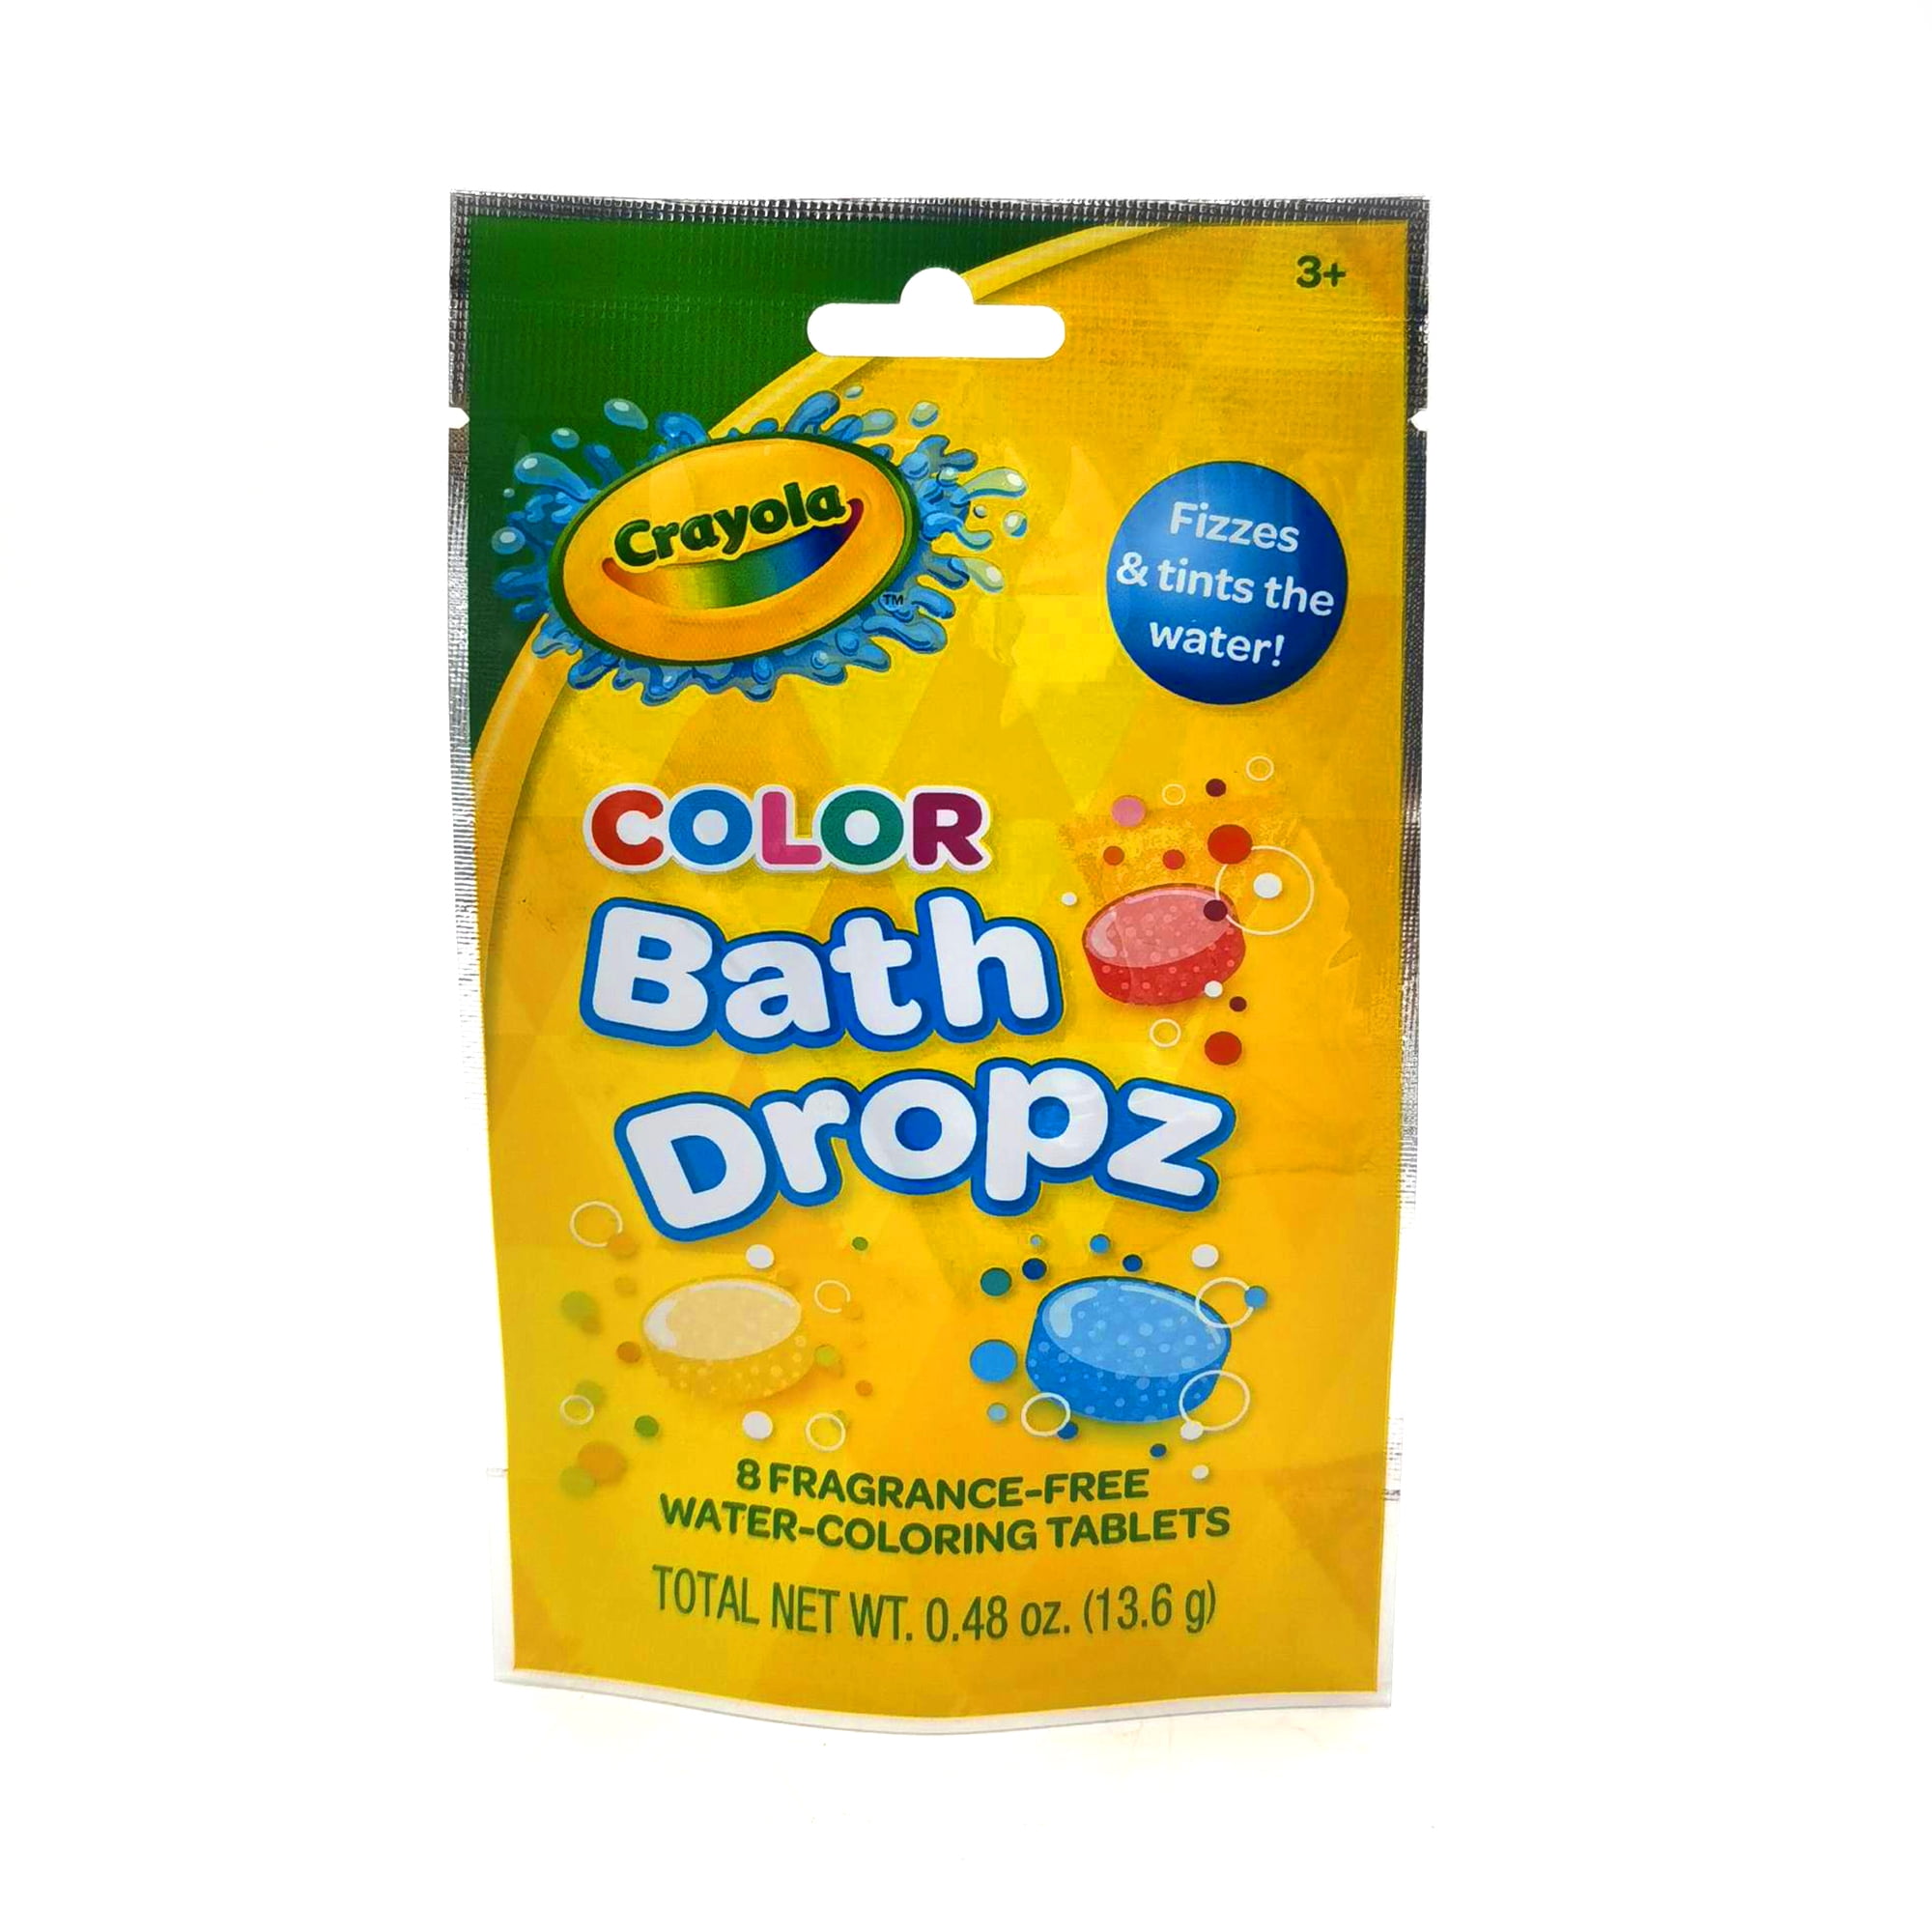 Crayola Color Bath Dropz, 0.48 oz;Fragrance- Free Water- Coloring Tablets, 8 count